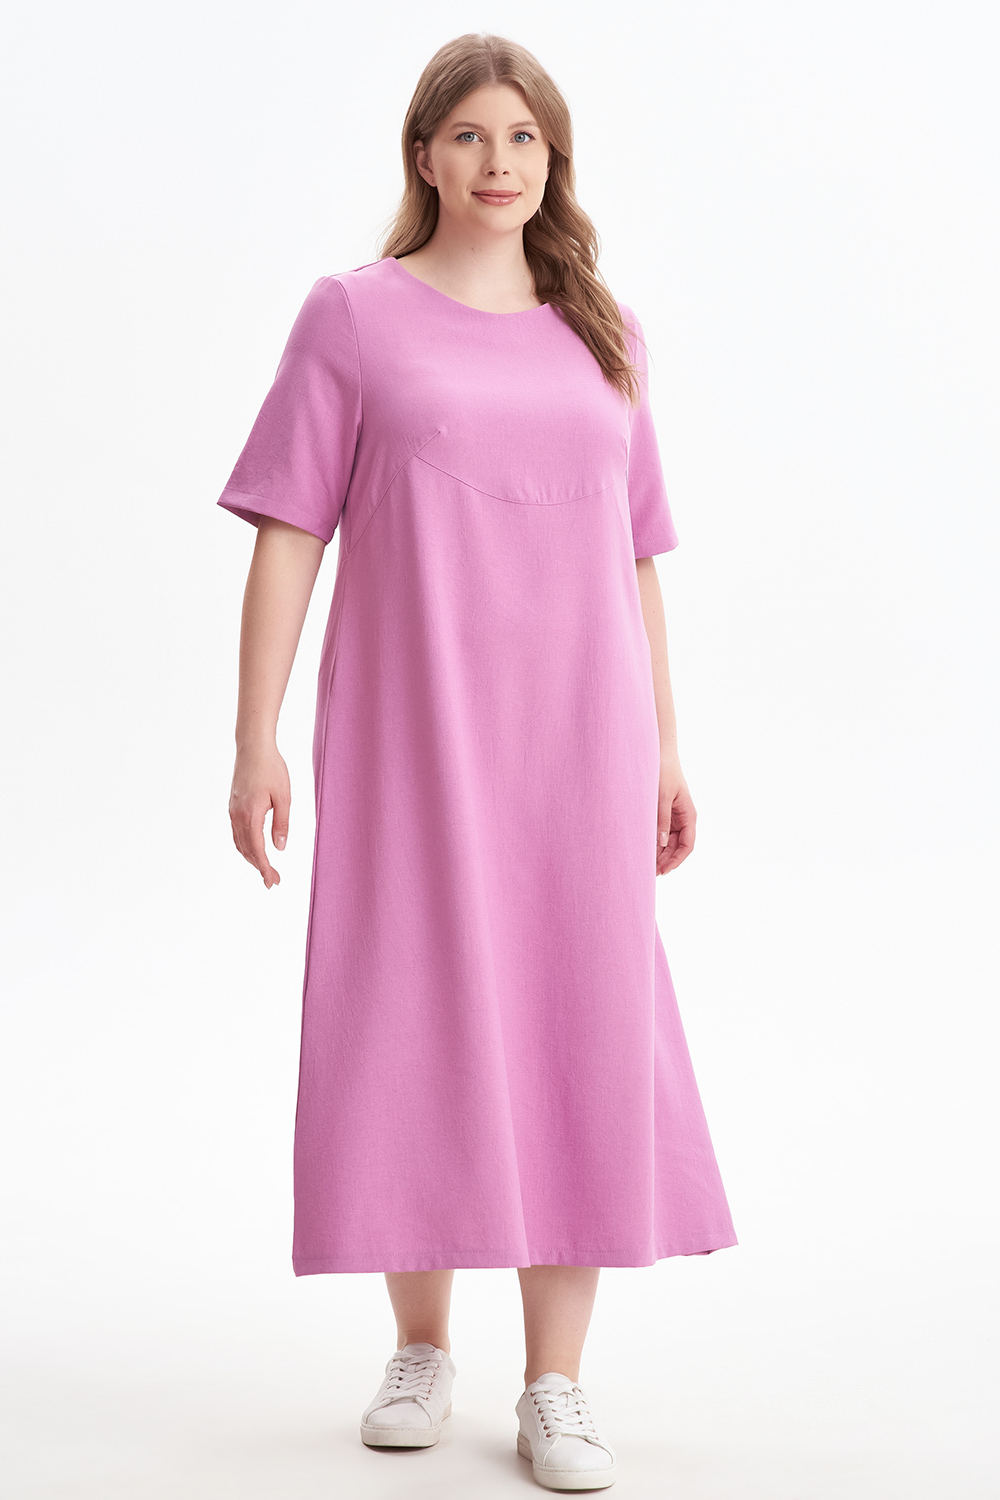 Платье женское OLSI 2305012 розовое 68 RU